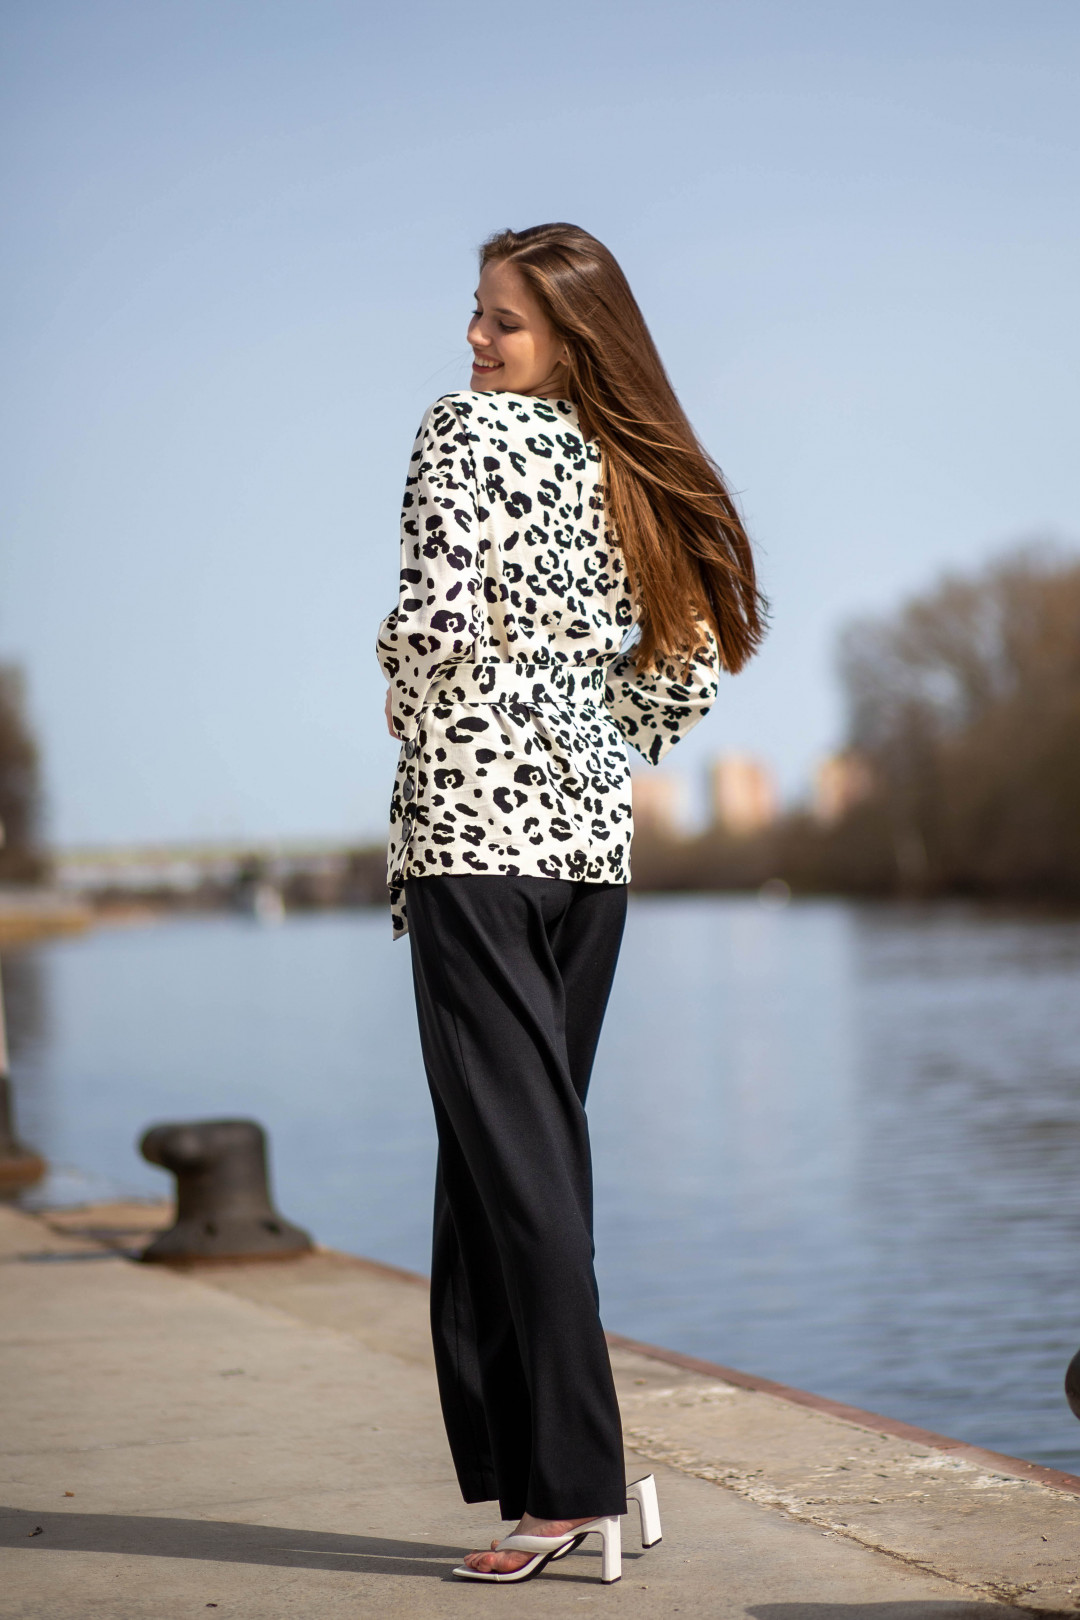 Костюм AlaniCollection 1700 блуза черно-белая «Леопард», брюки черные